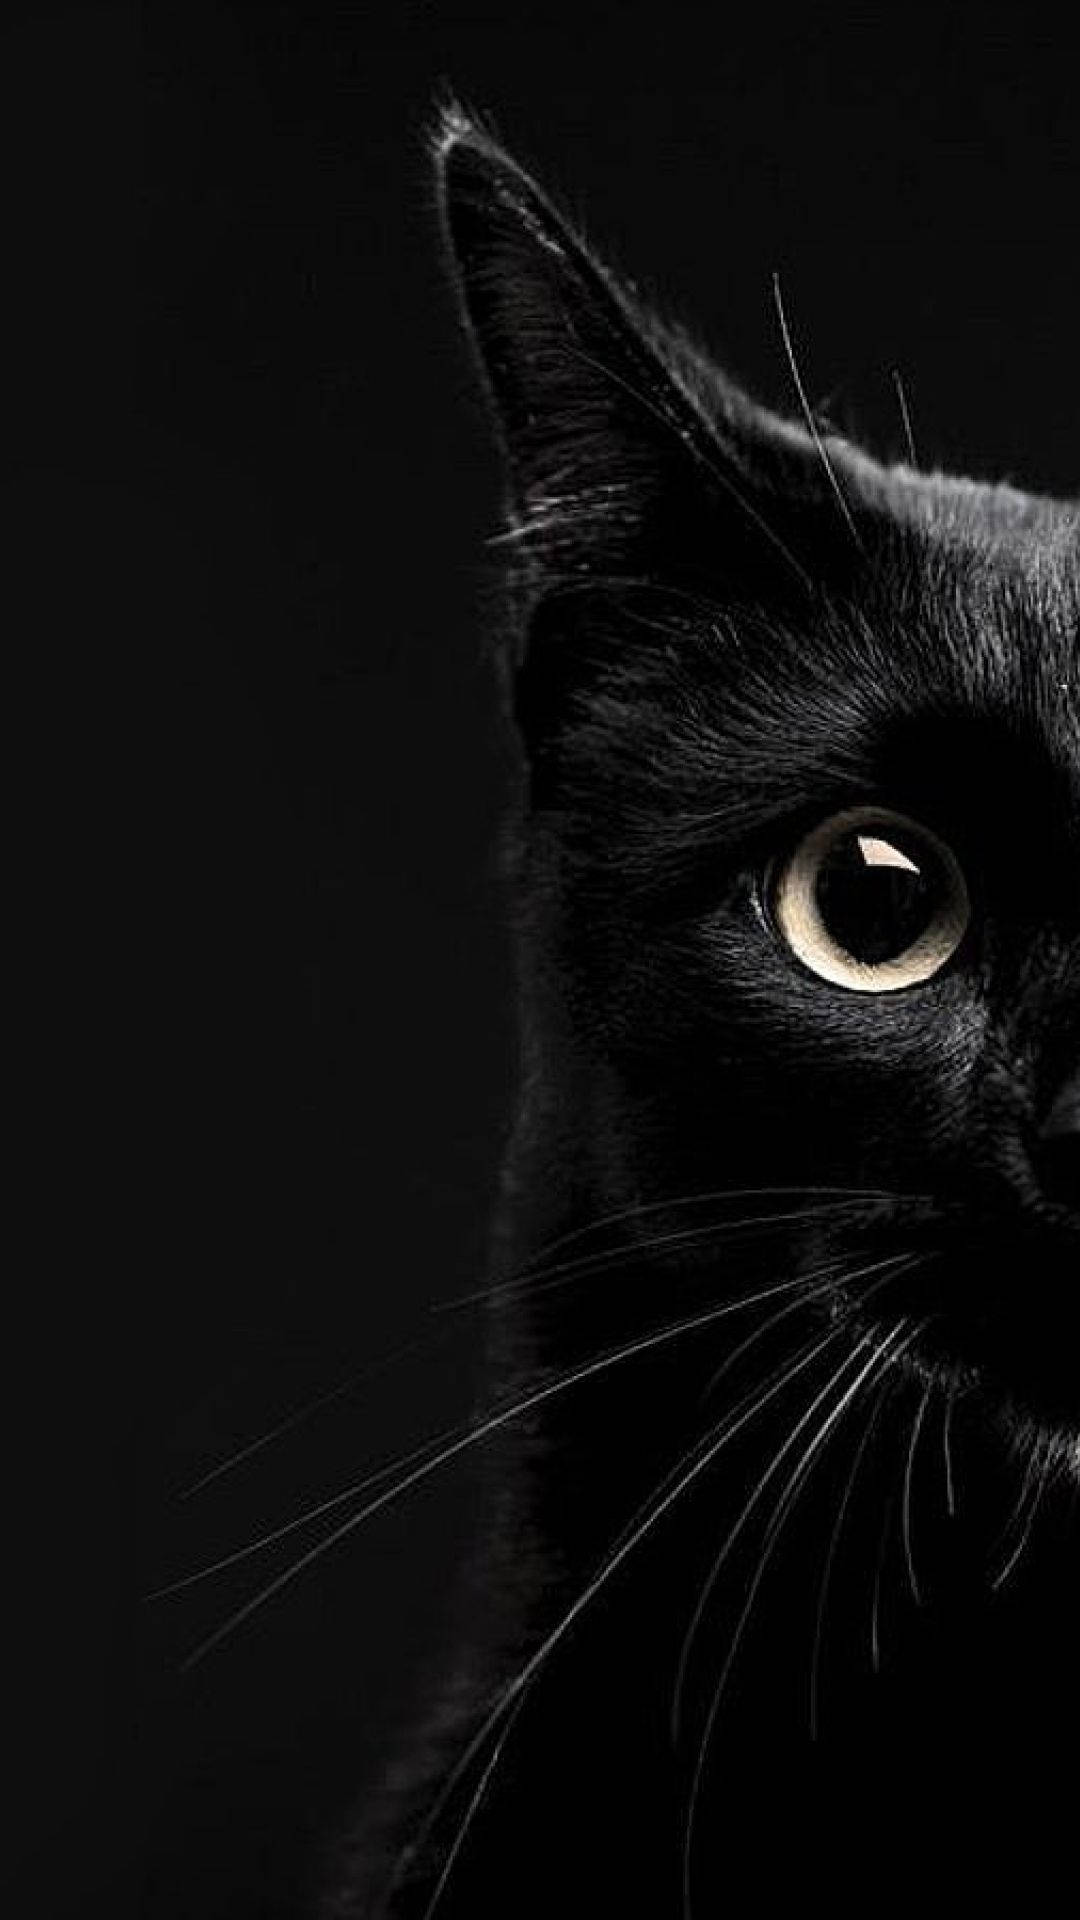 Aesthetic Half Shot Black Cat Iphone